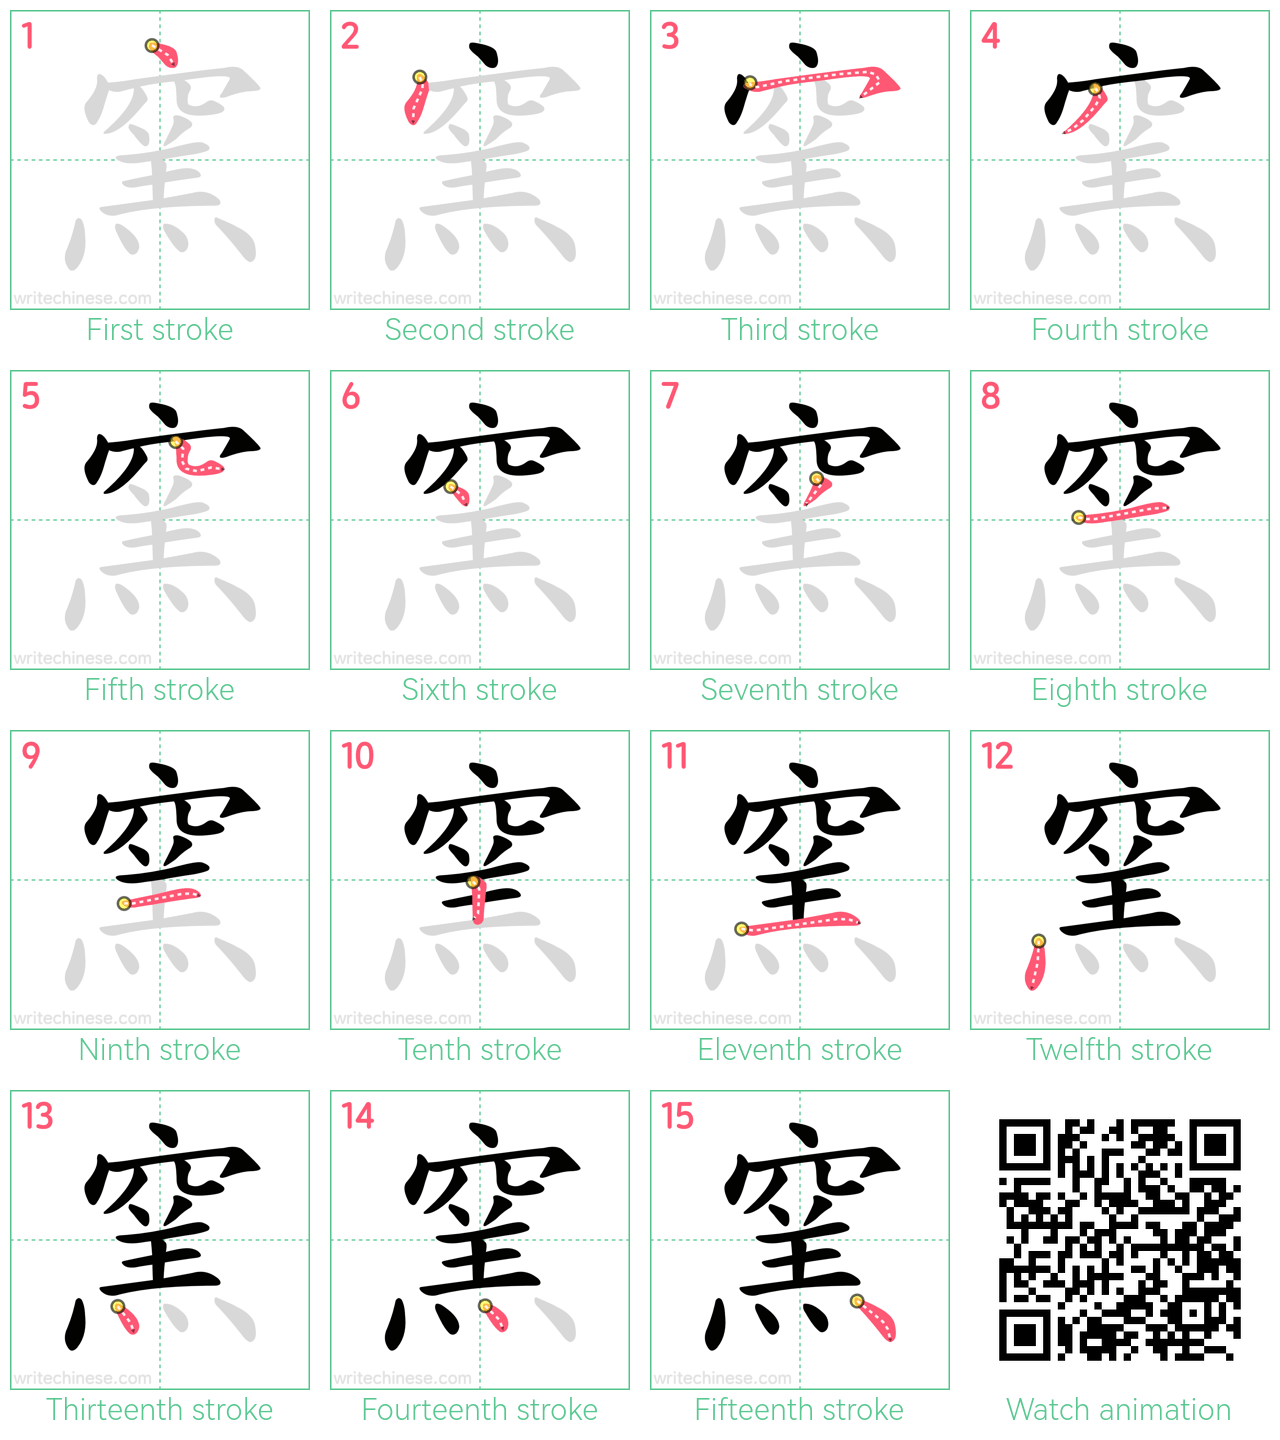 窯 step-by-step stroke order diagrams